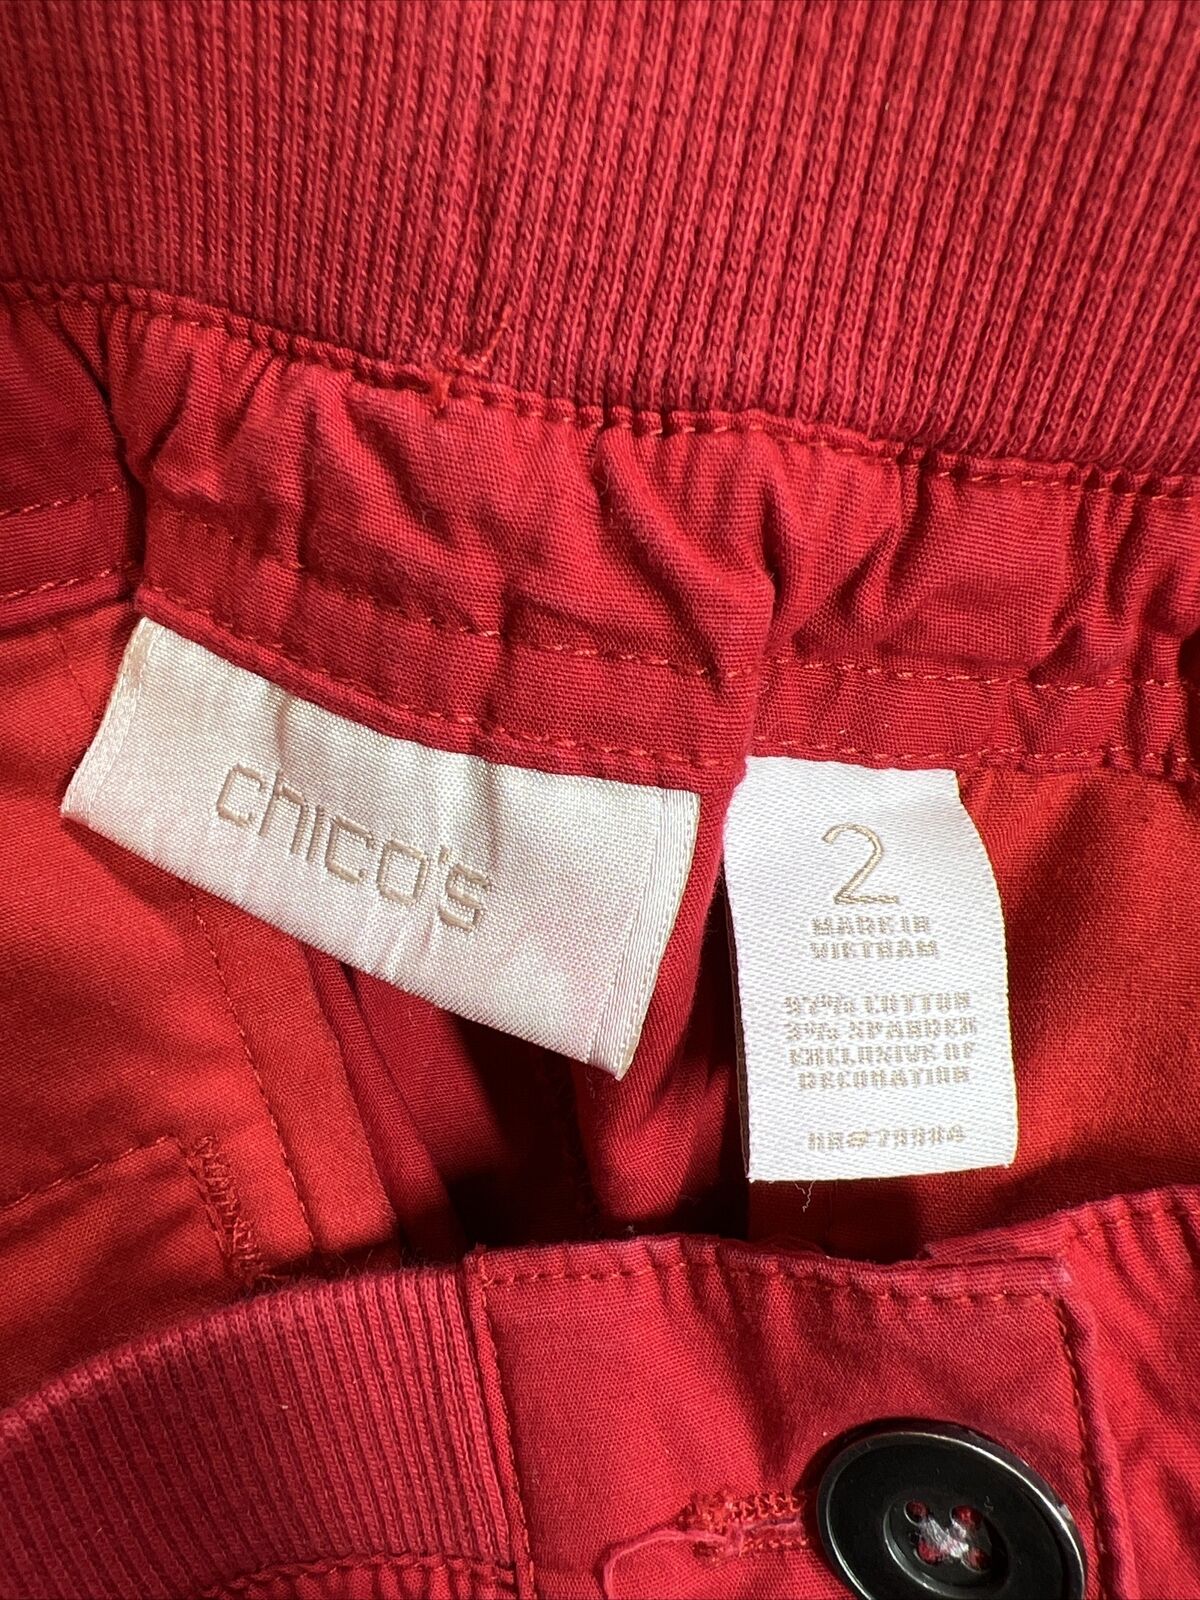 Chico's Pantalones cortos tipo cargo con cintura elástica, color rojo, para mujer - 2/US 12